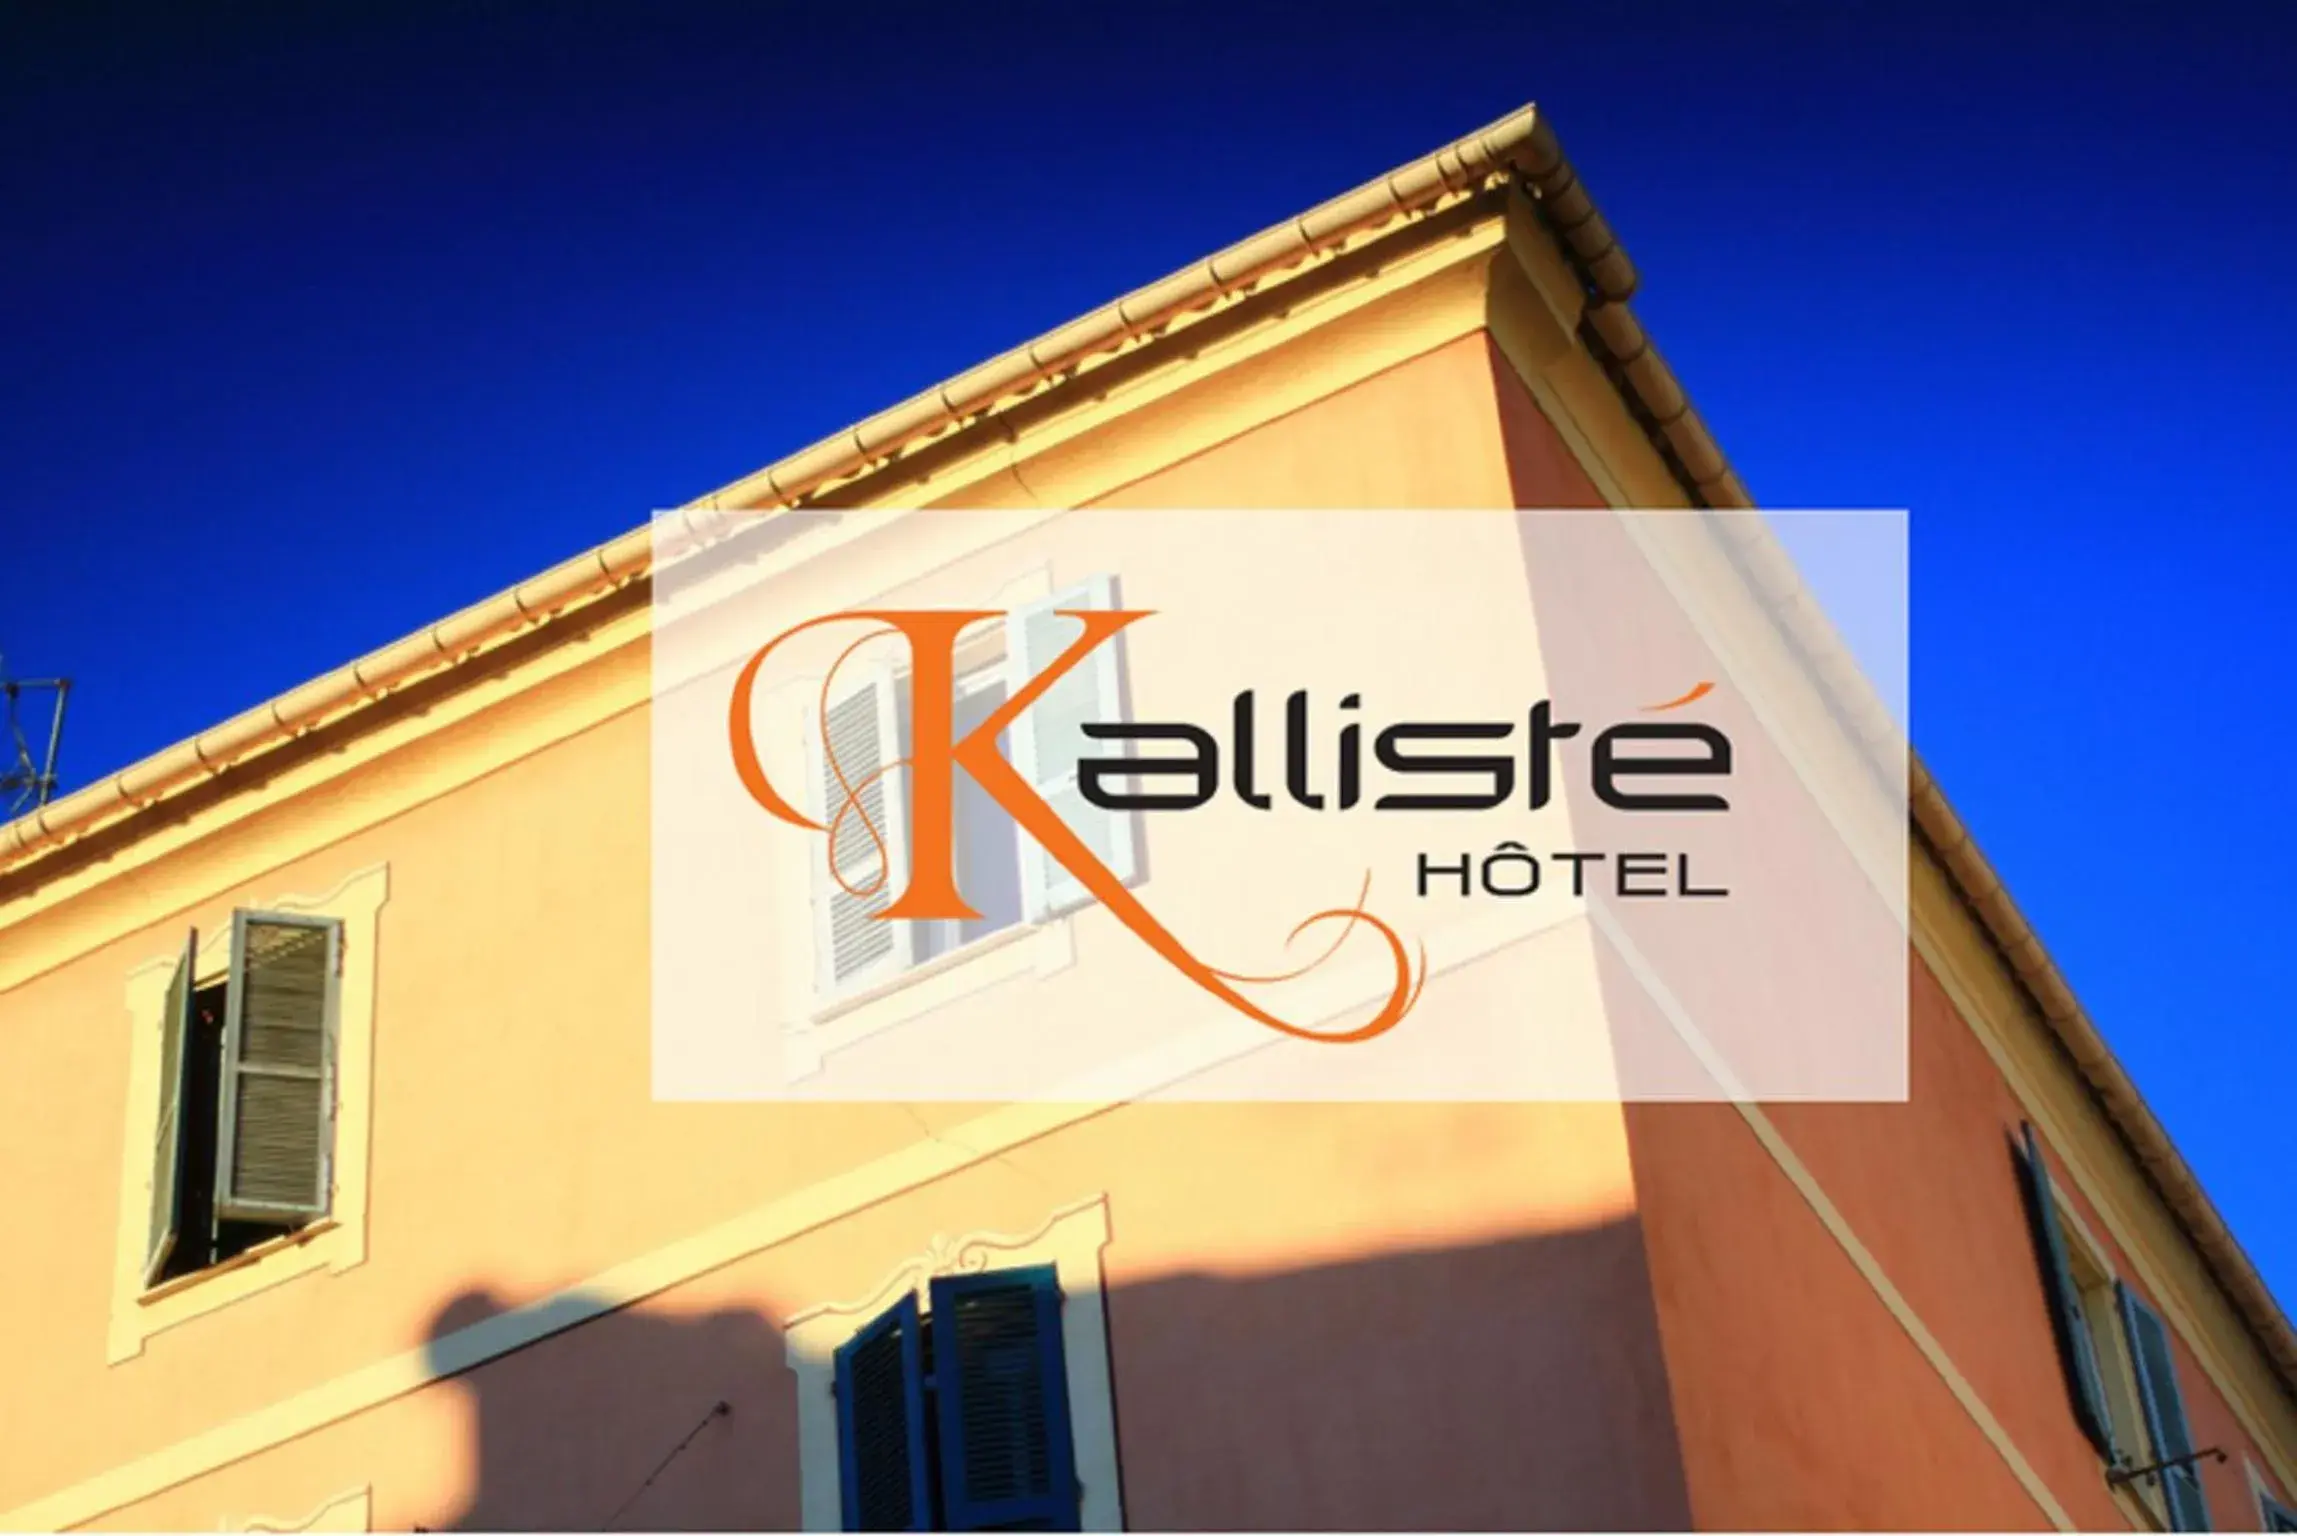 Property building, Property Logo/Sign in Kalliste Hotel